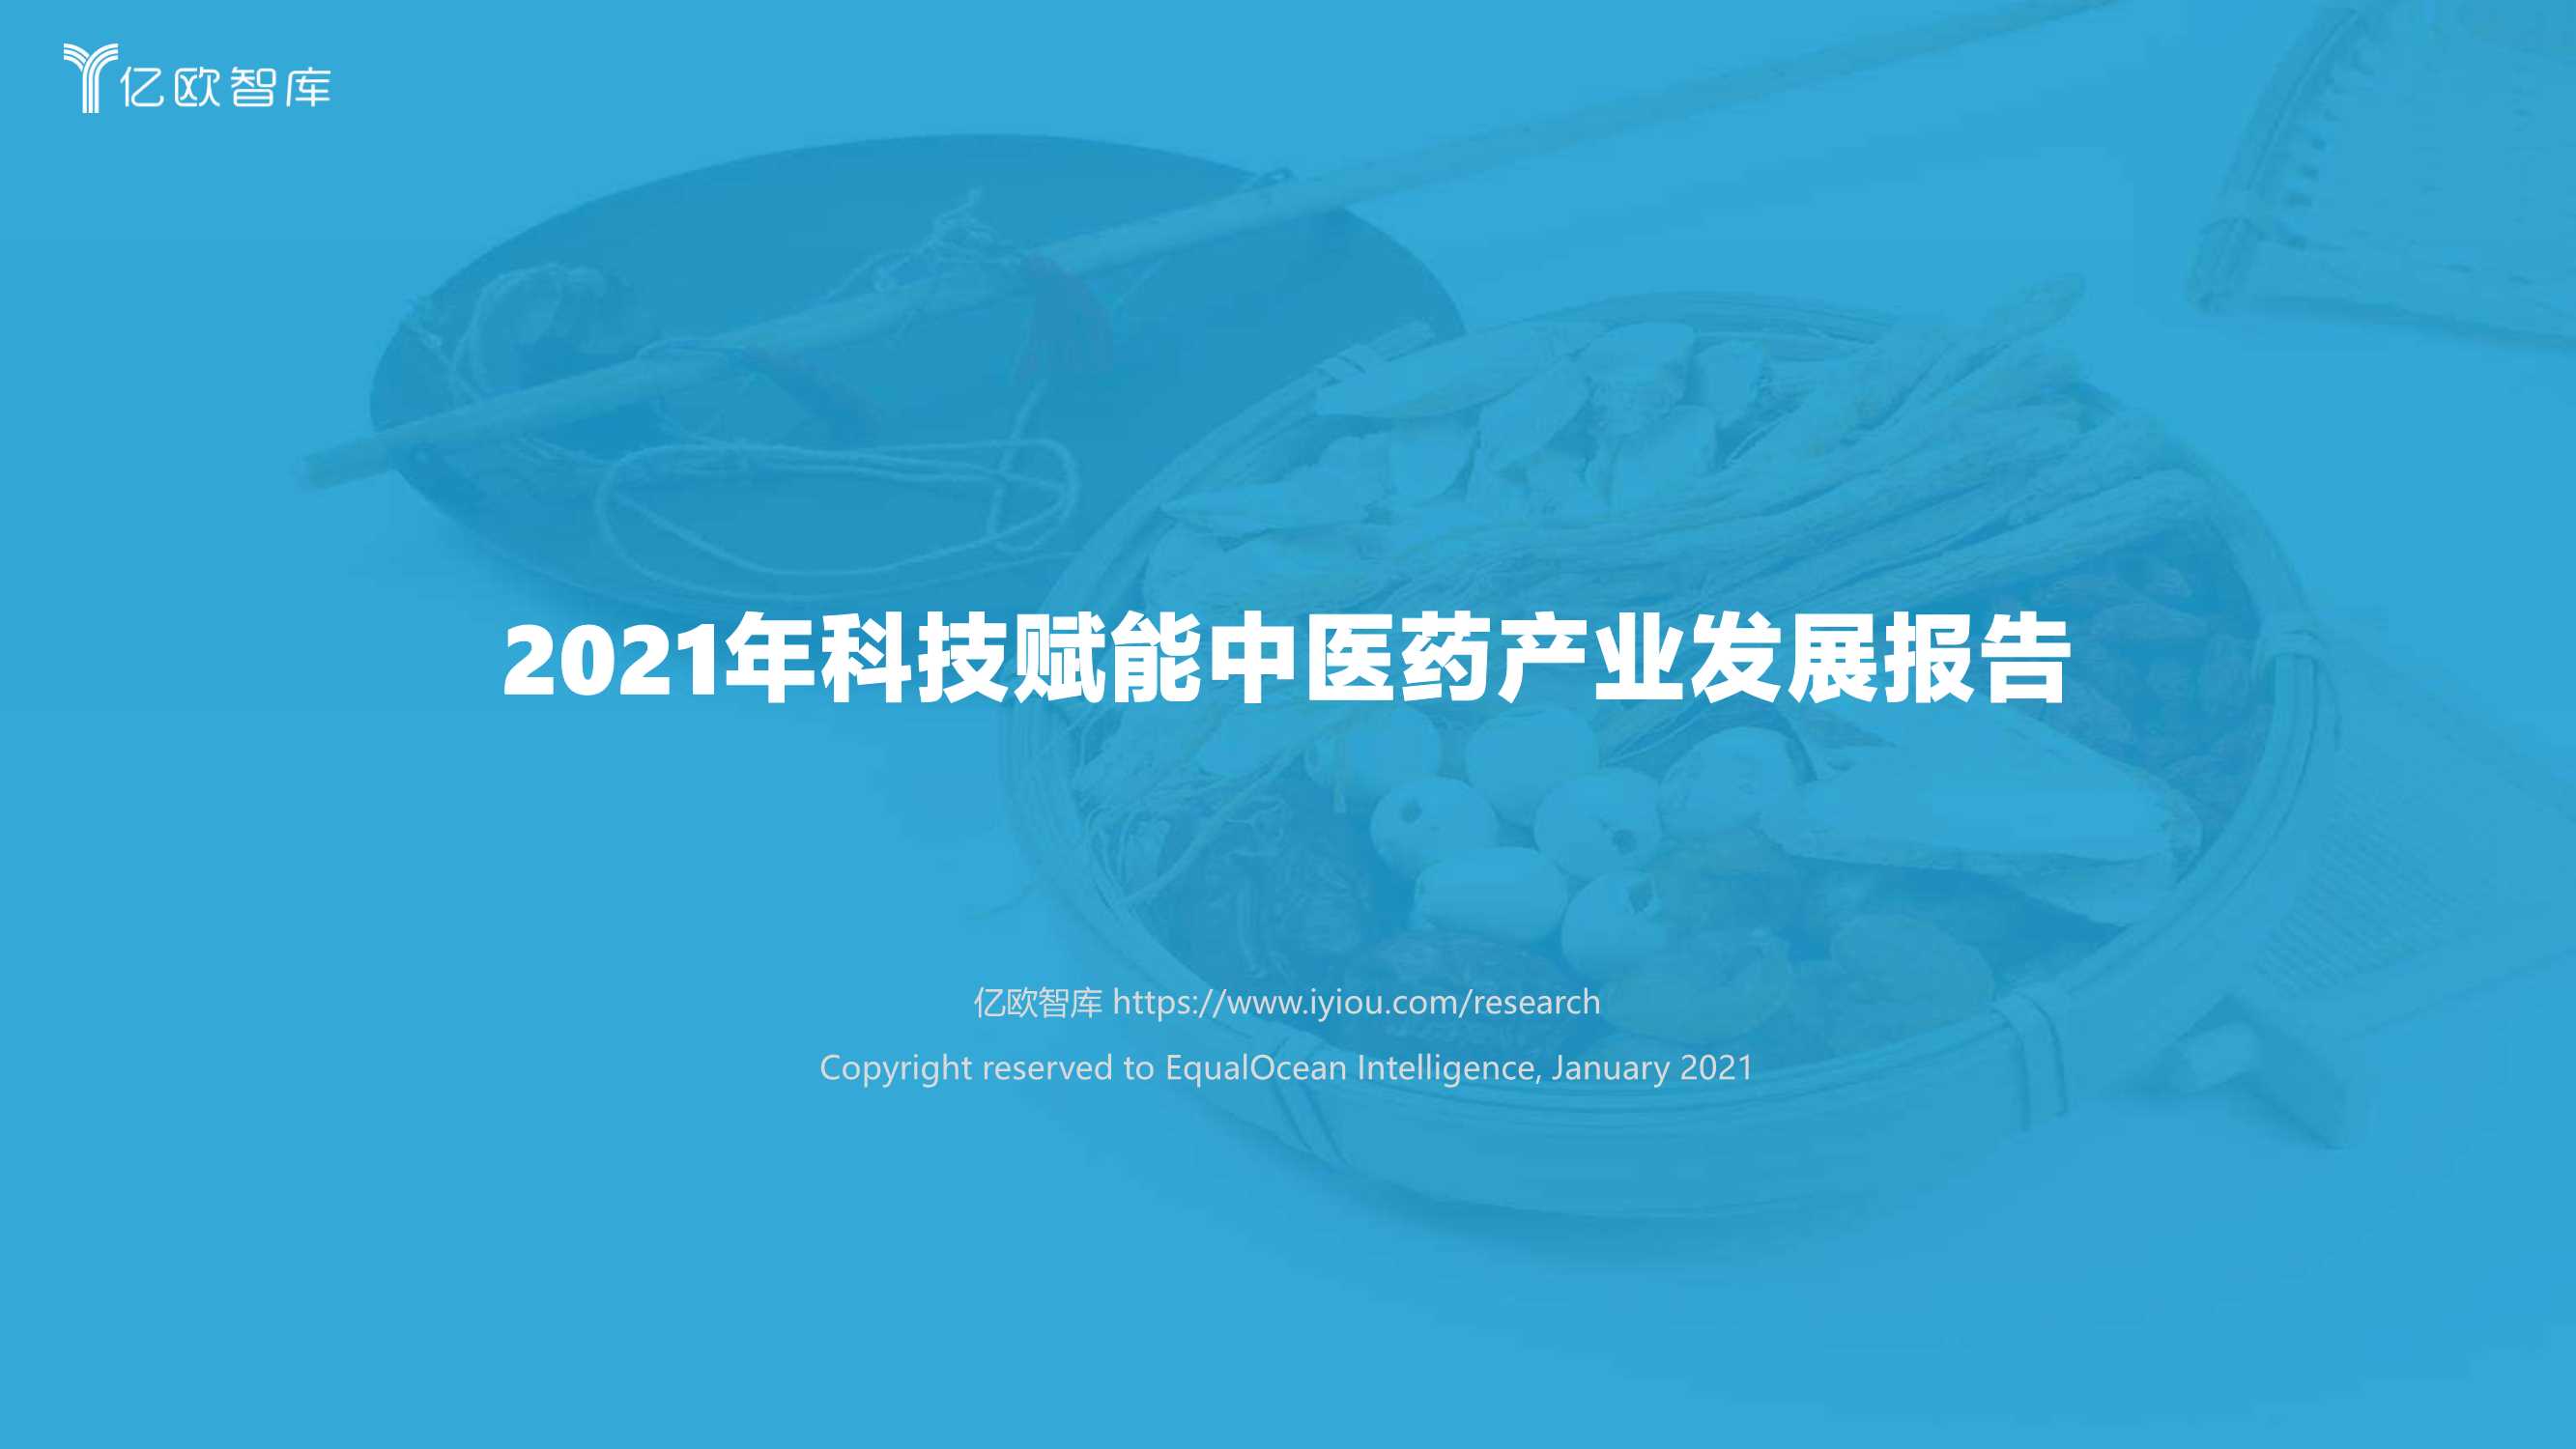 亿欧智库-2021年科技赋能中医药产业发展报告-2021.10-40页